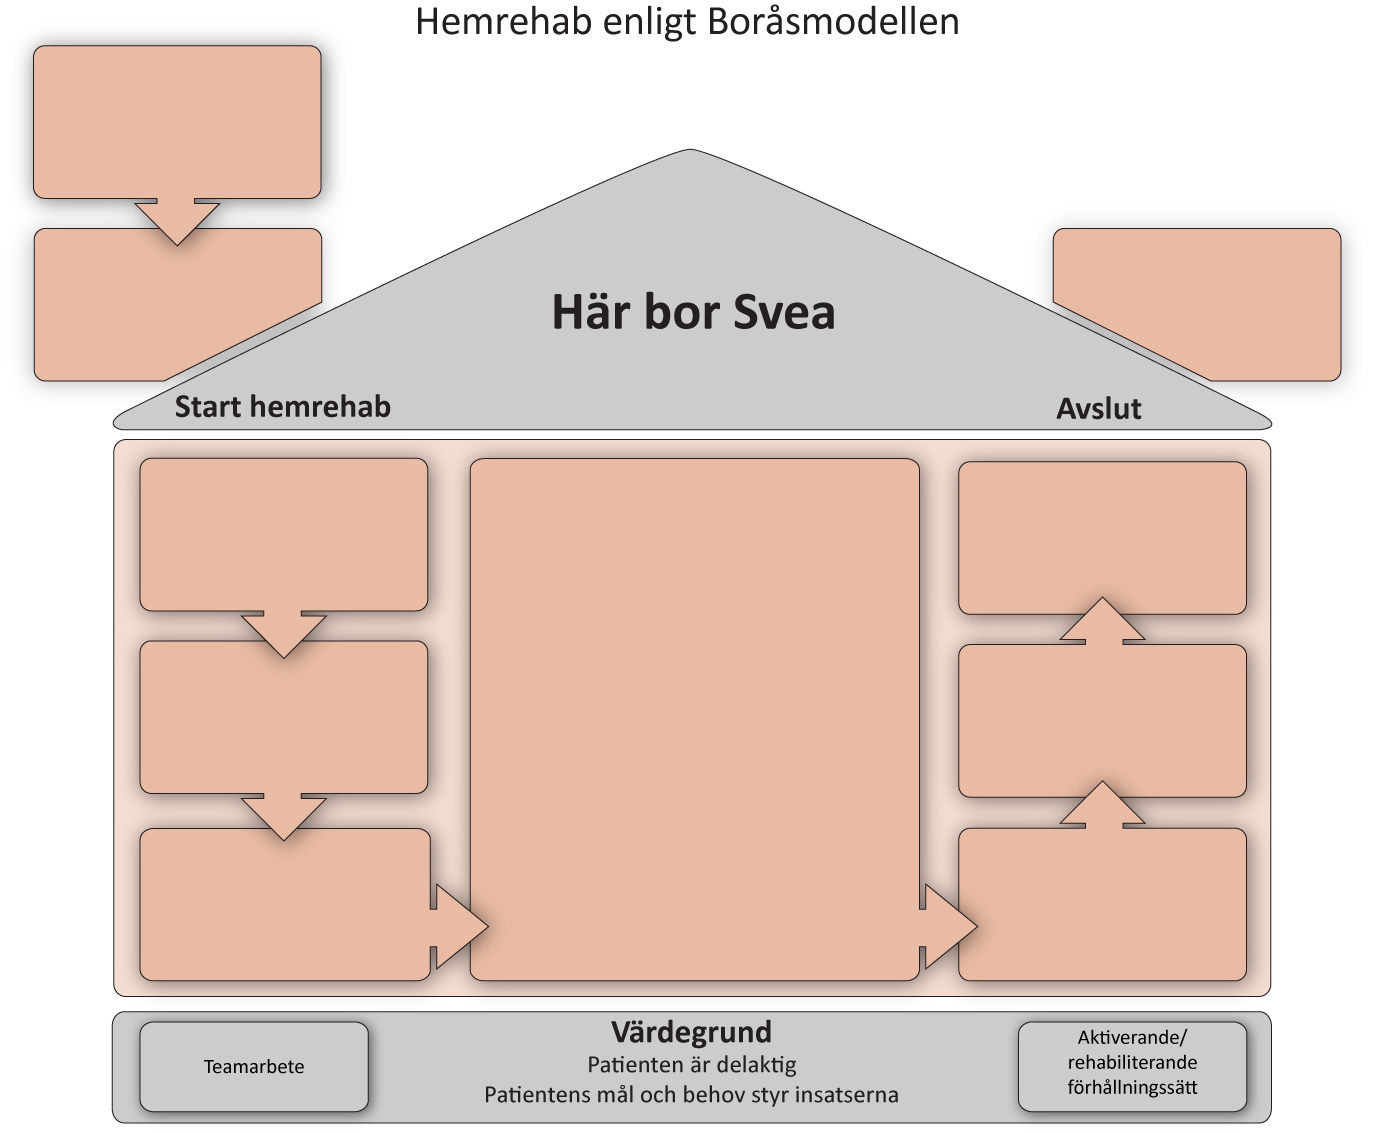 Sairaala Palveluasuminen Koti Boråsin kotikuntoutusmalli josta otetaan mallia Eksotessa Kotiavun piirissä vai Ei?